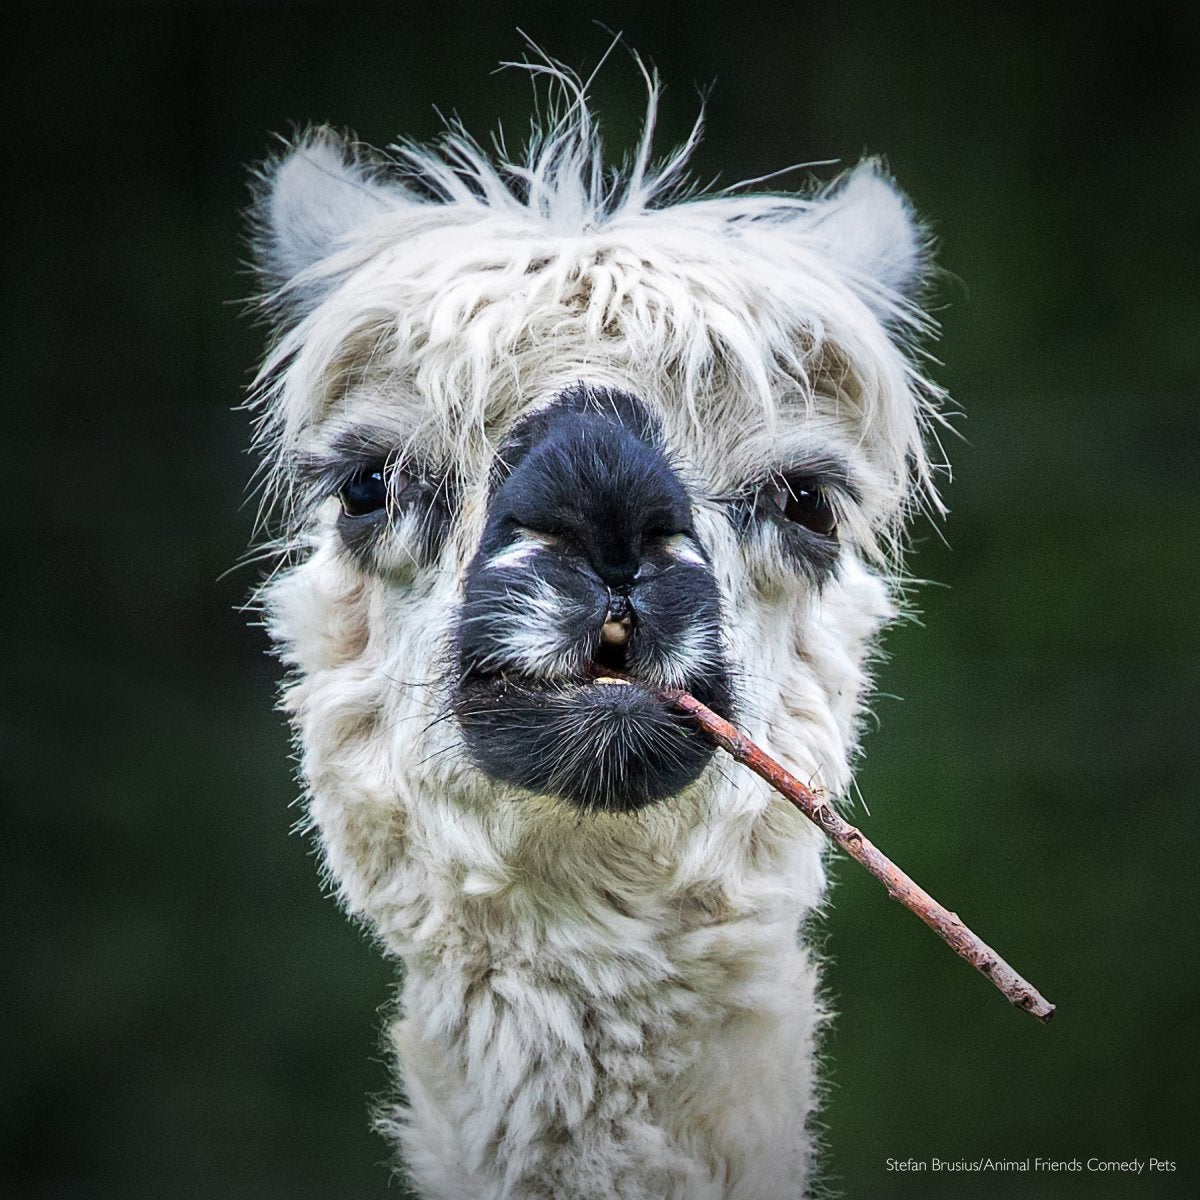 Smokin' Alpaca “He looks like he is smoking a cigar.”